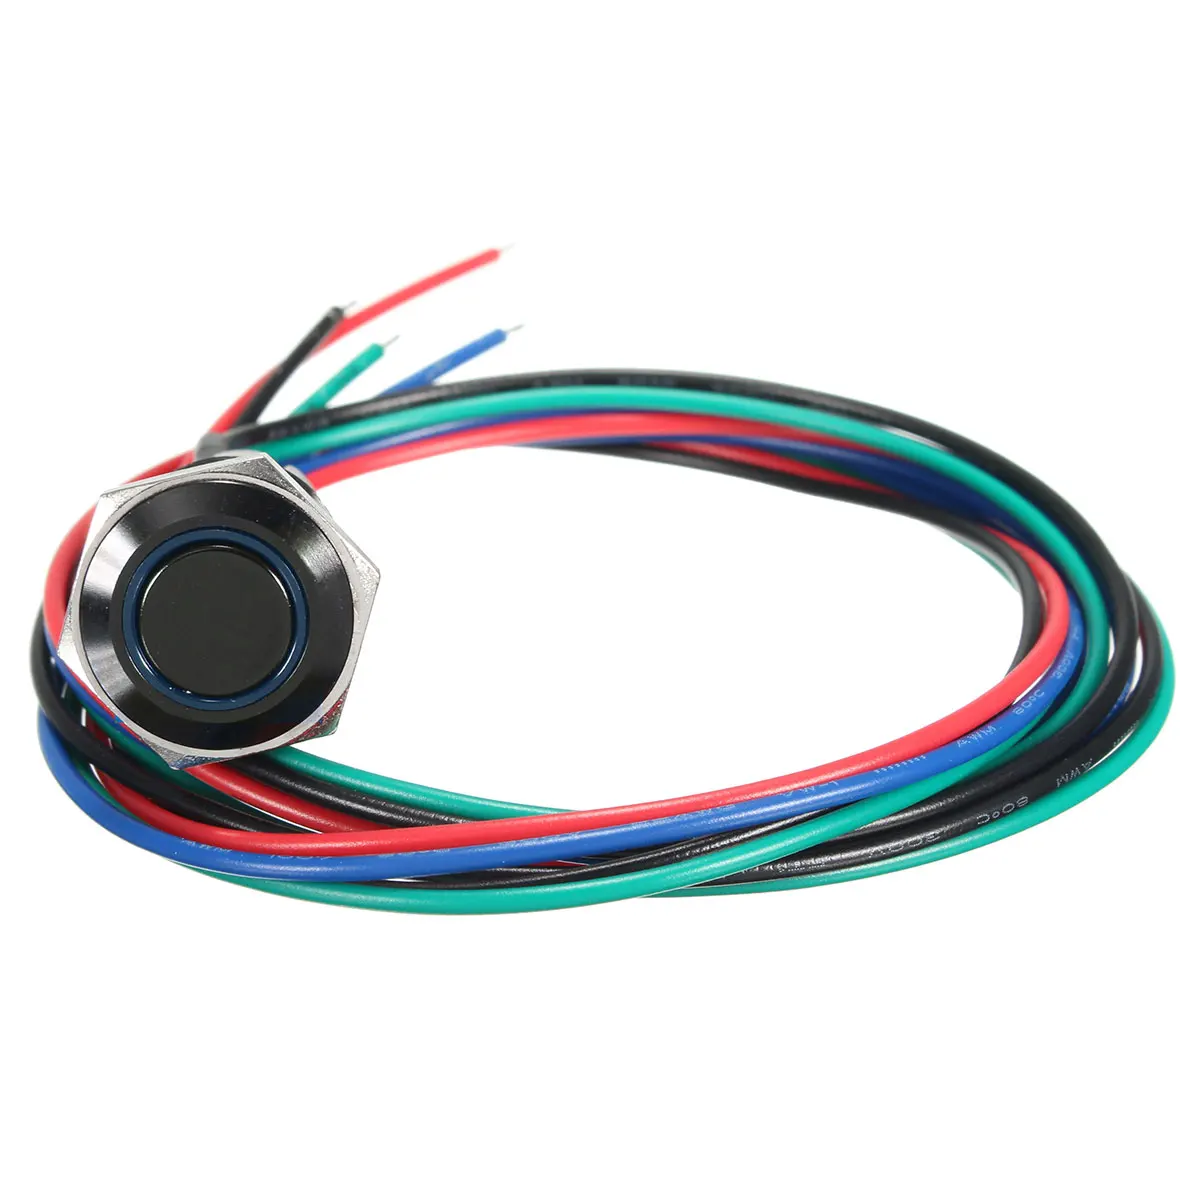 12 V 3A 16 мм разблокировать ВКЛ-ВЫКЛ спортивный режим светодиодная кнопка переключатель для BMW/E60 5 серии белый, красный, оранжевый, синий, зеленый - Цвет: Синий